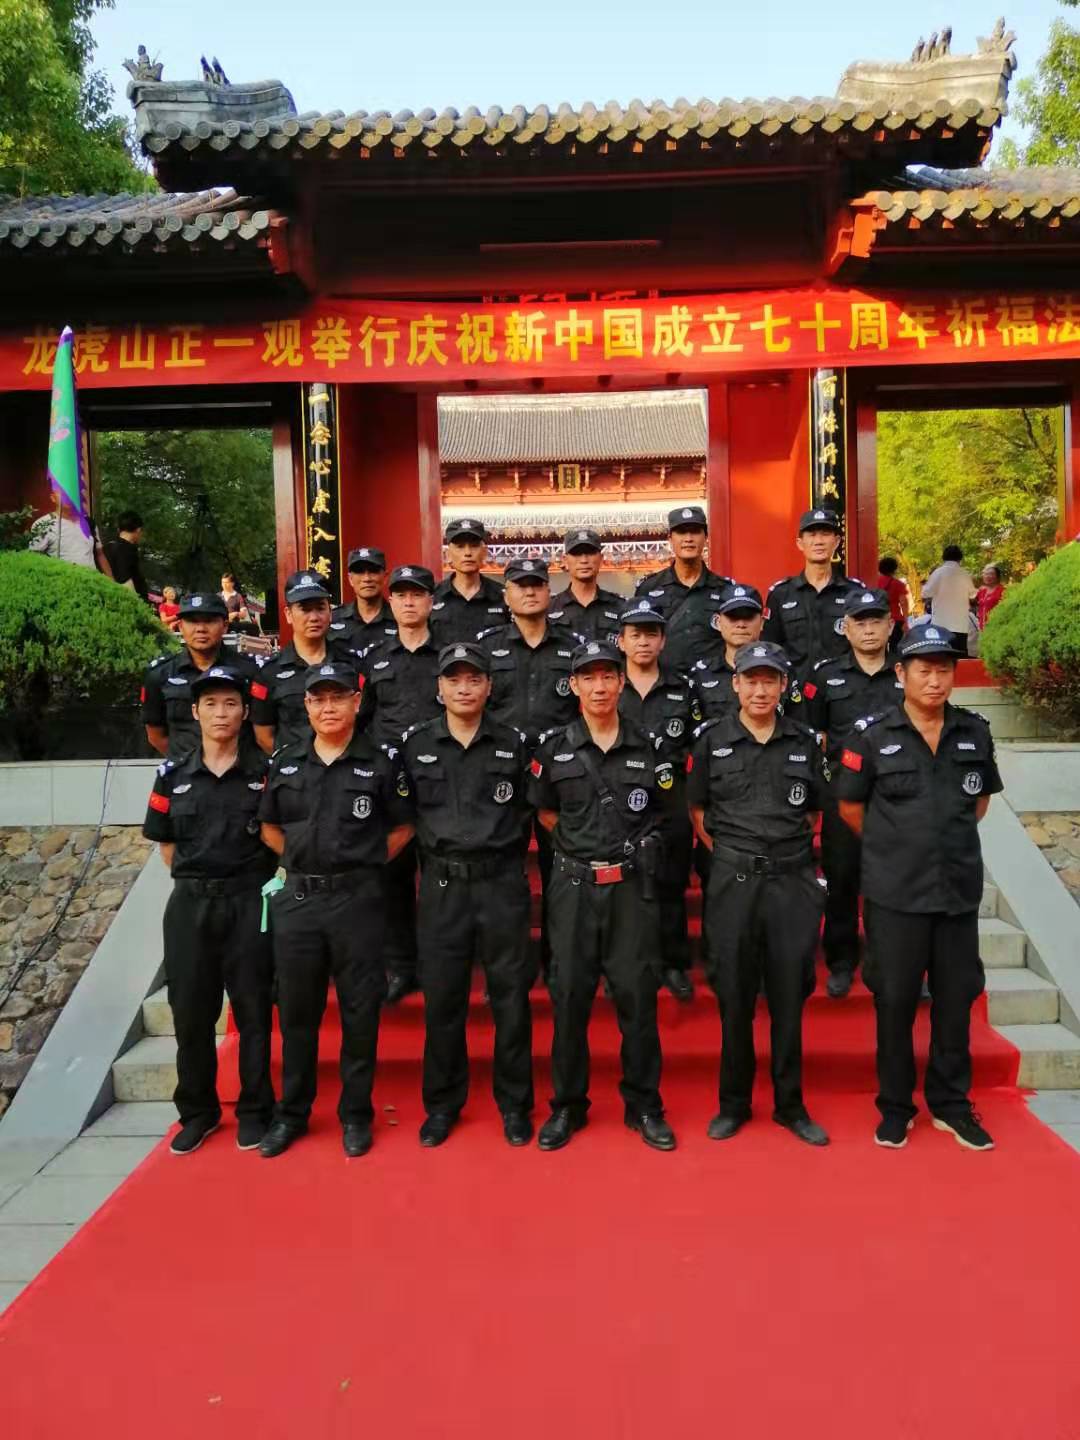 2019年9月龙虎山正一观祈福法会安保活动现场